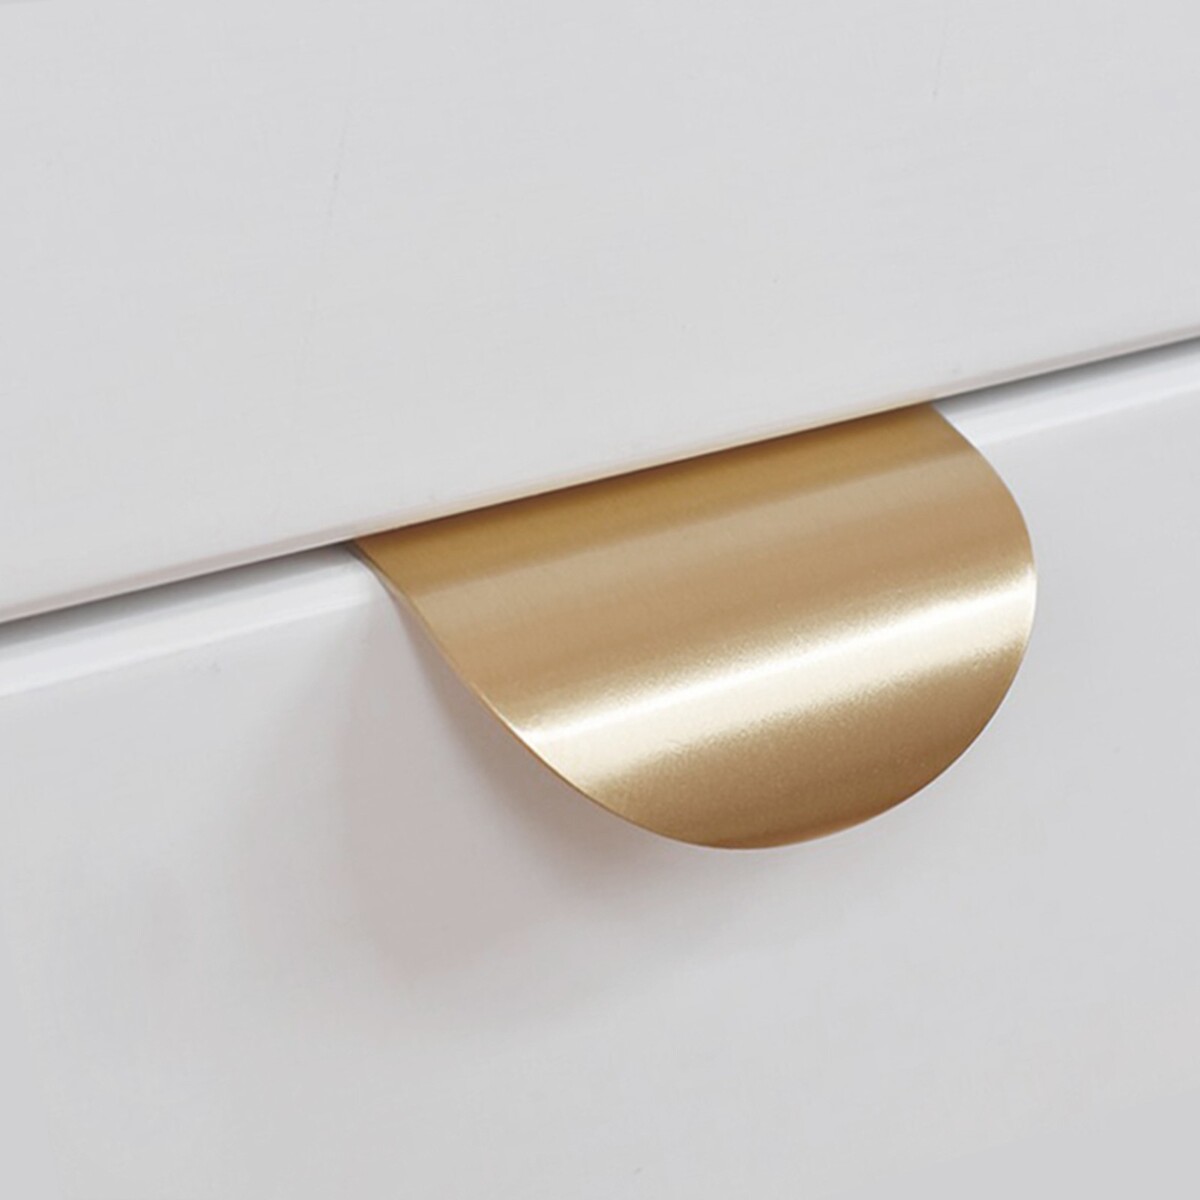 Ручка cappio, м/о 32 мм, цвет матовое золото фиксатор аллюр bk s1 sb pb 4176 11 455 матовое золото золото